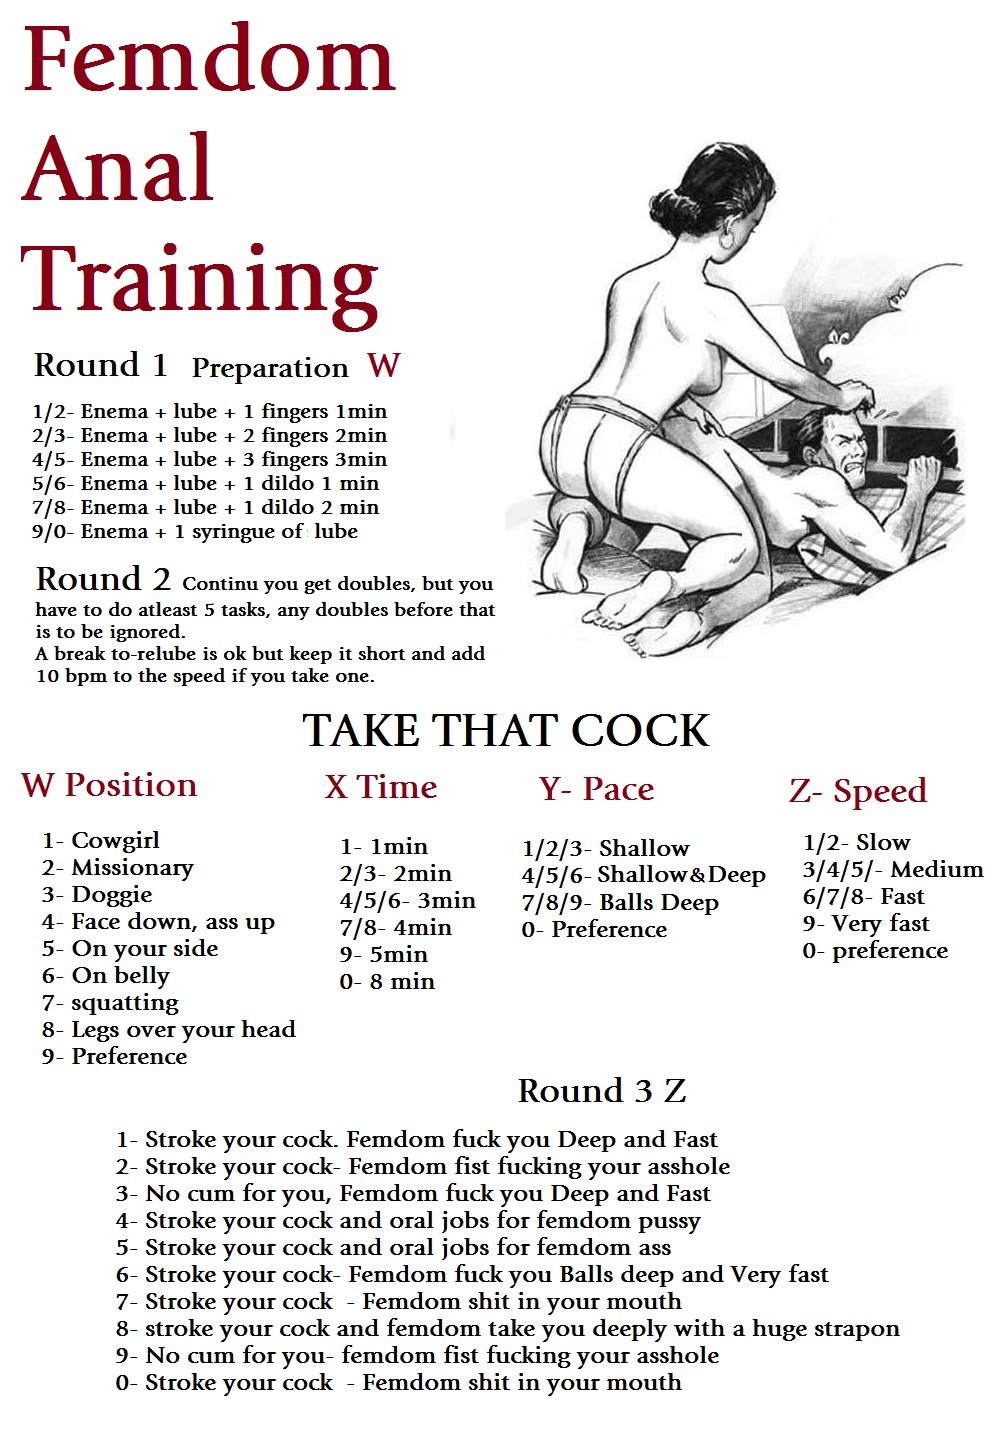 Anal training femdom